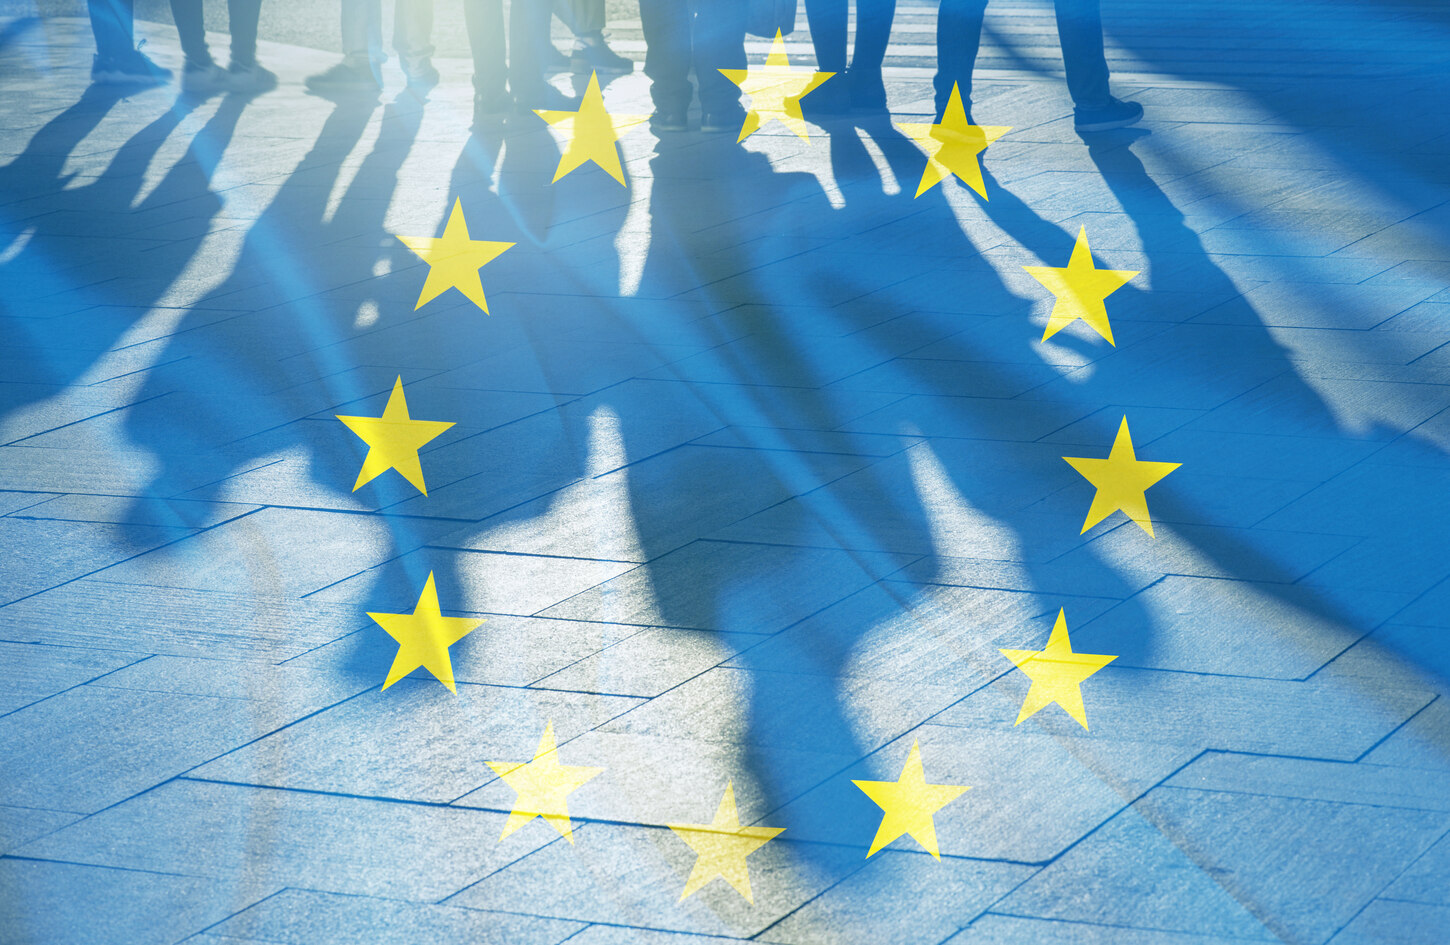 EU-Fahne, durch die Silhouetten von Menschen scheinen